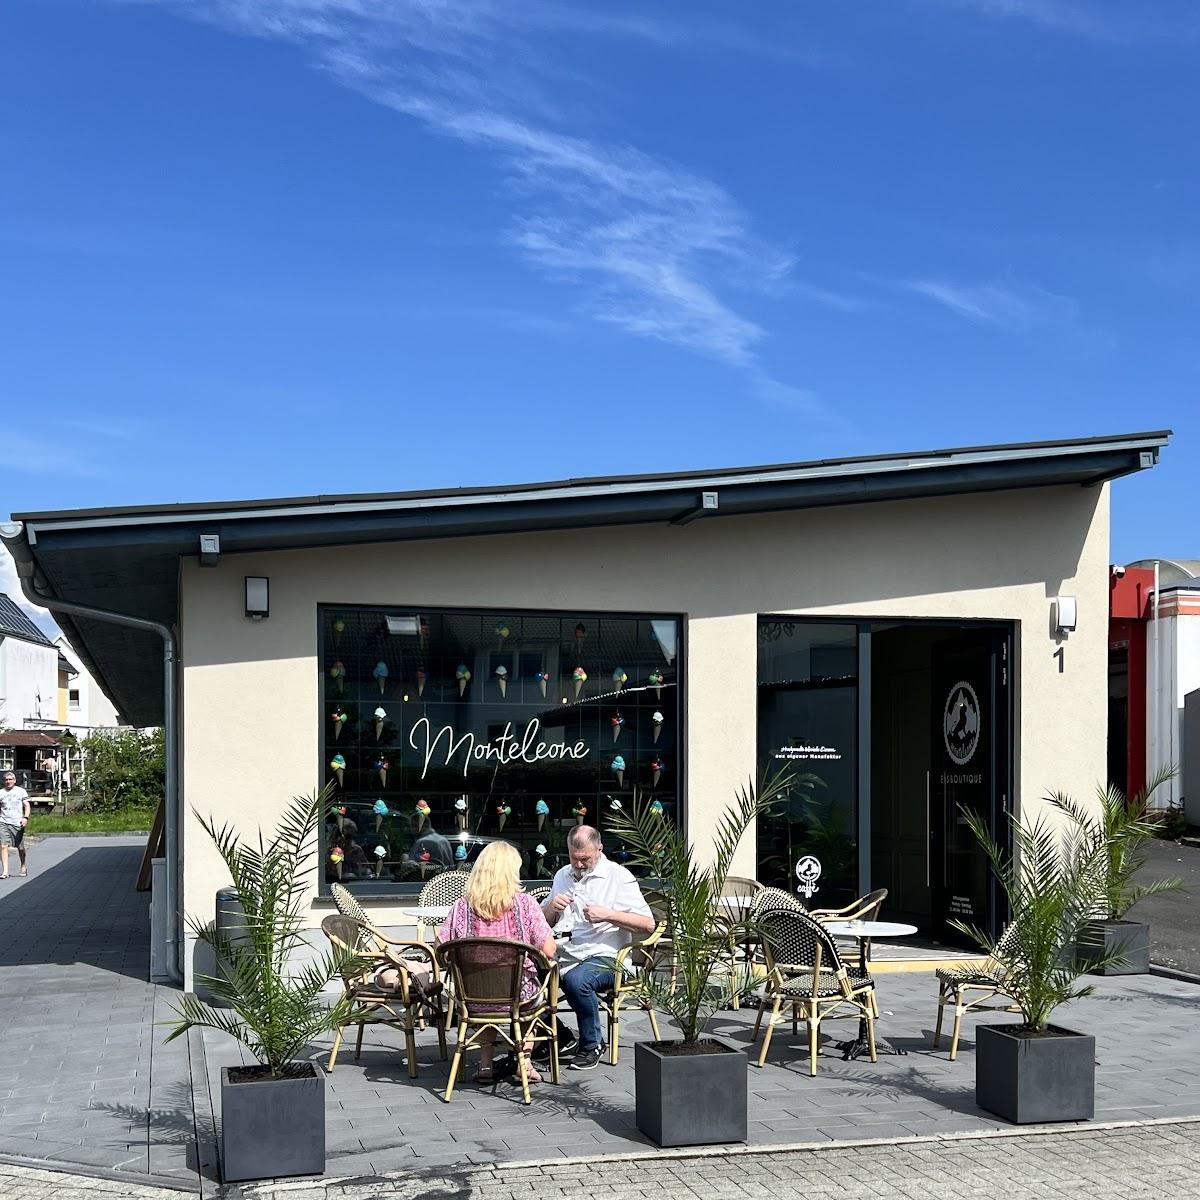 Restaurant "Monteleone Eis Watzenborn" in Pohlheim